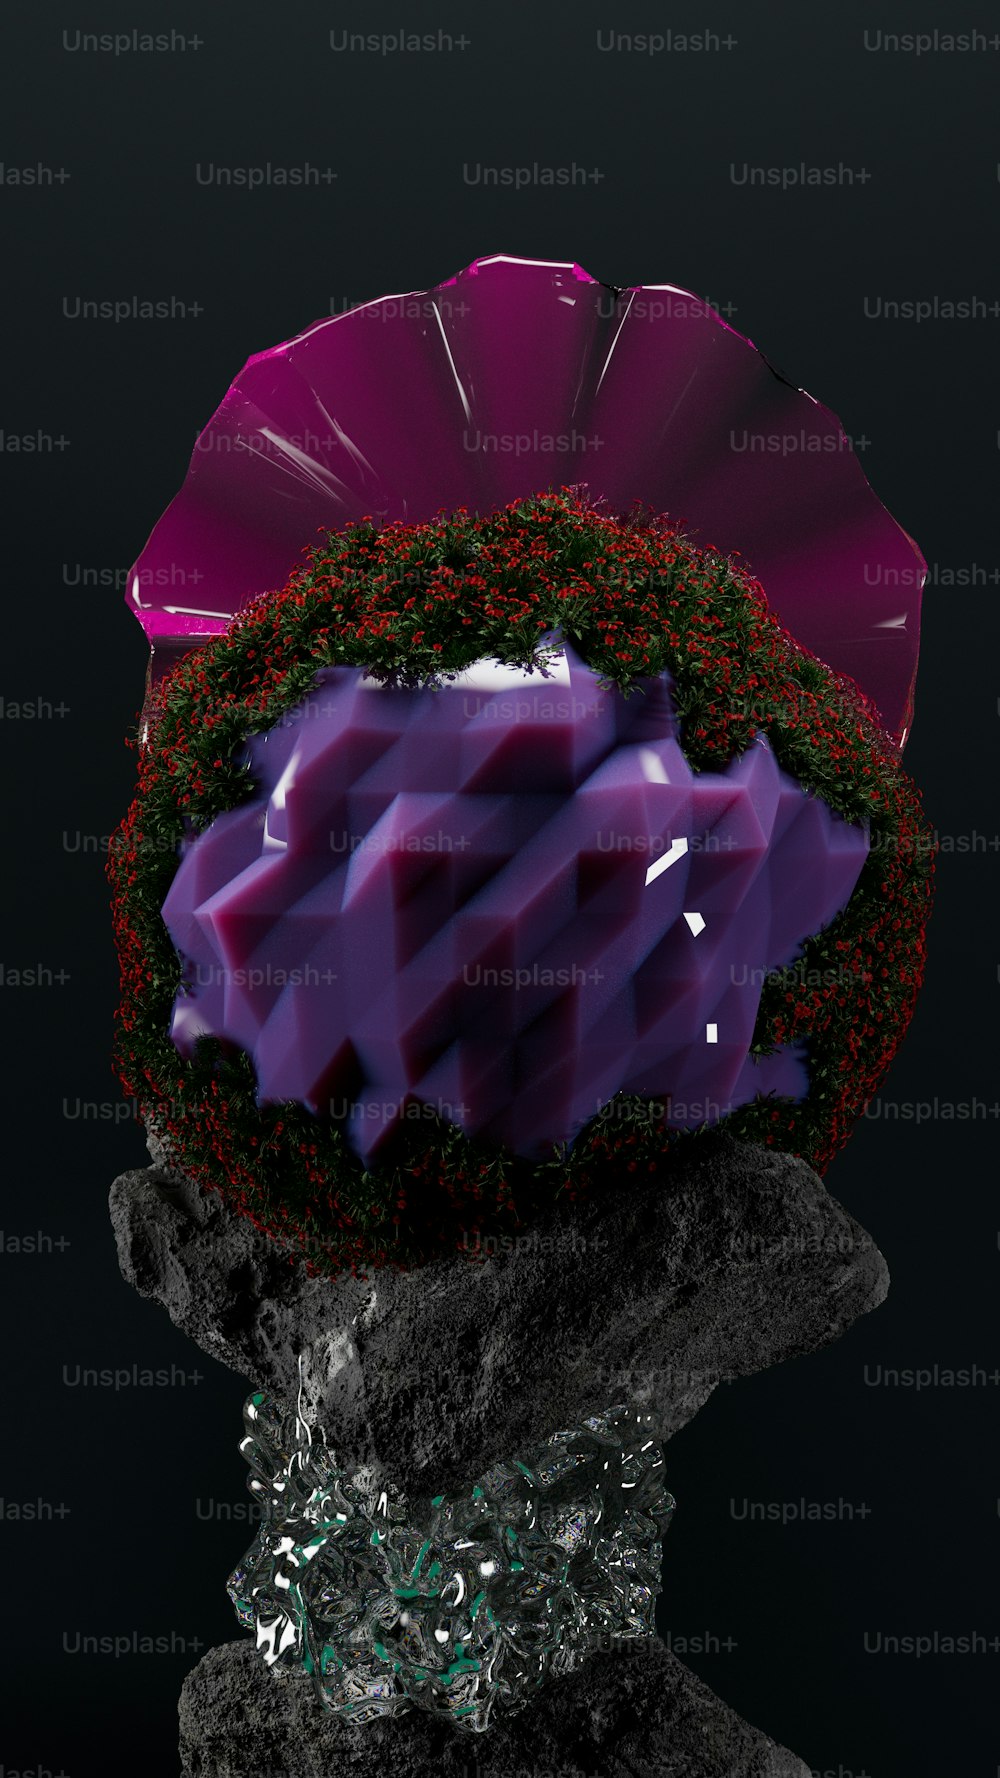 Ein violettes Objekt, das auf einem Felsen sitzt